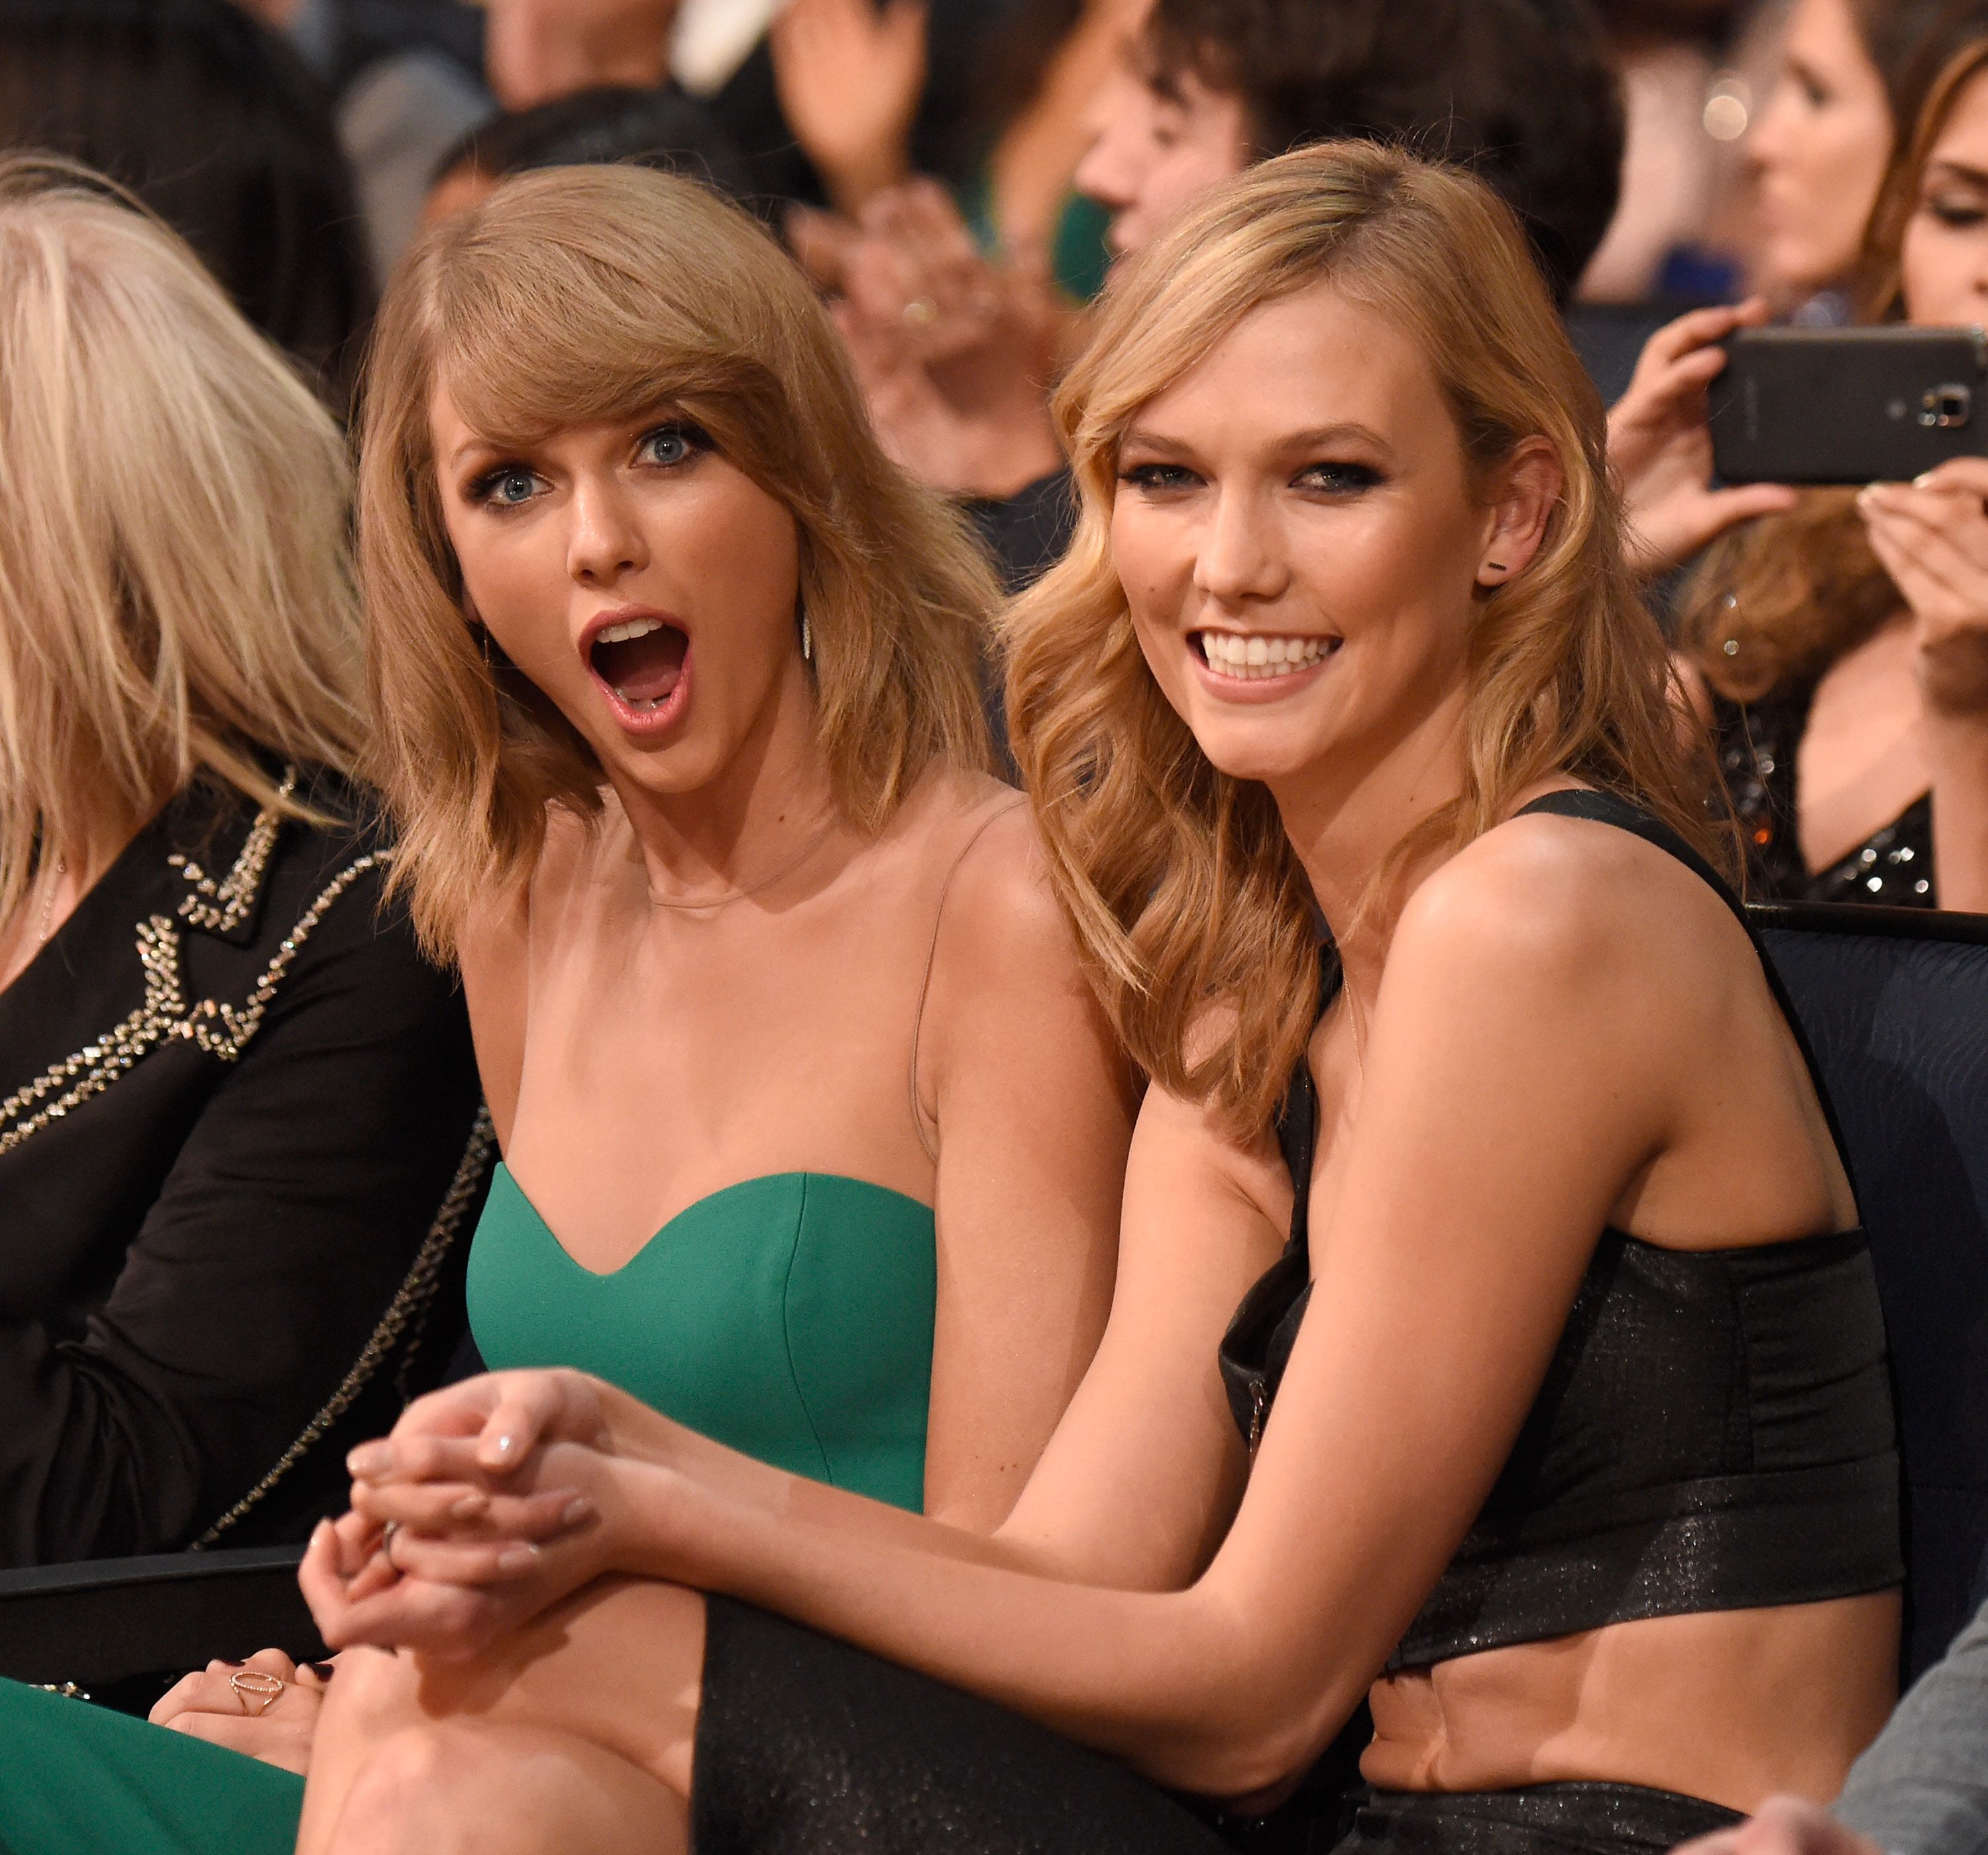 Los fans están convencidos de que la nueva canción de Taylor Swift "It